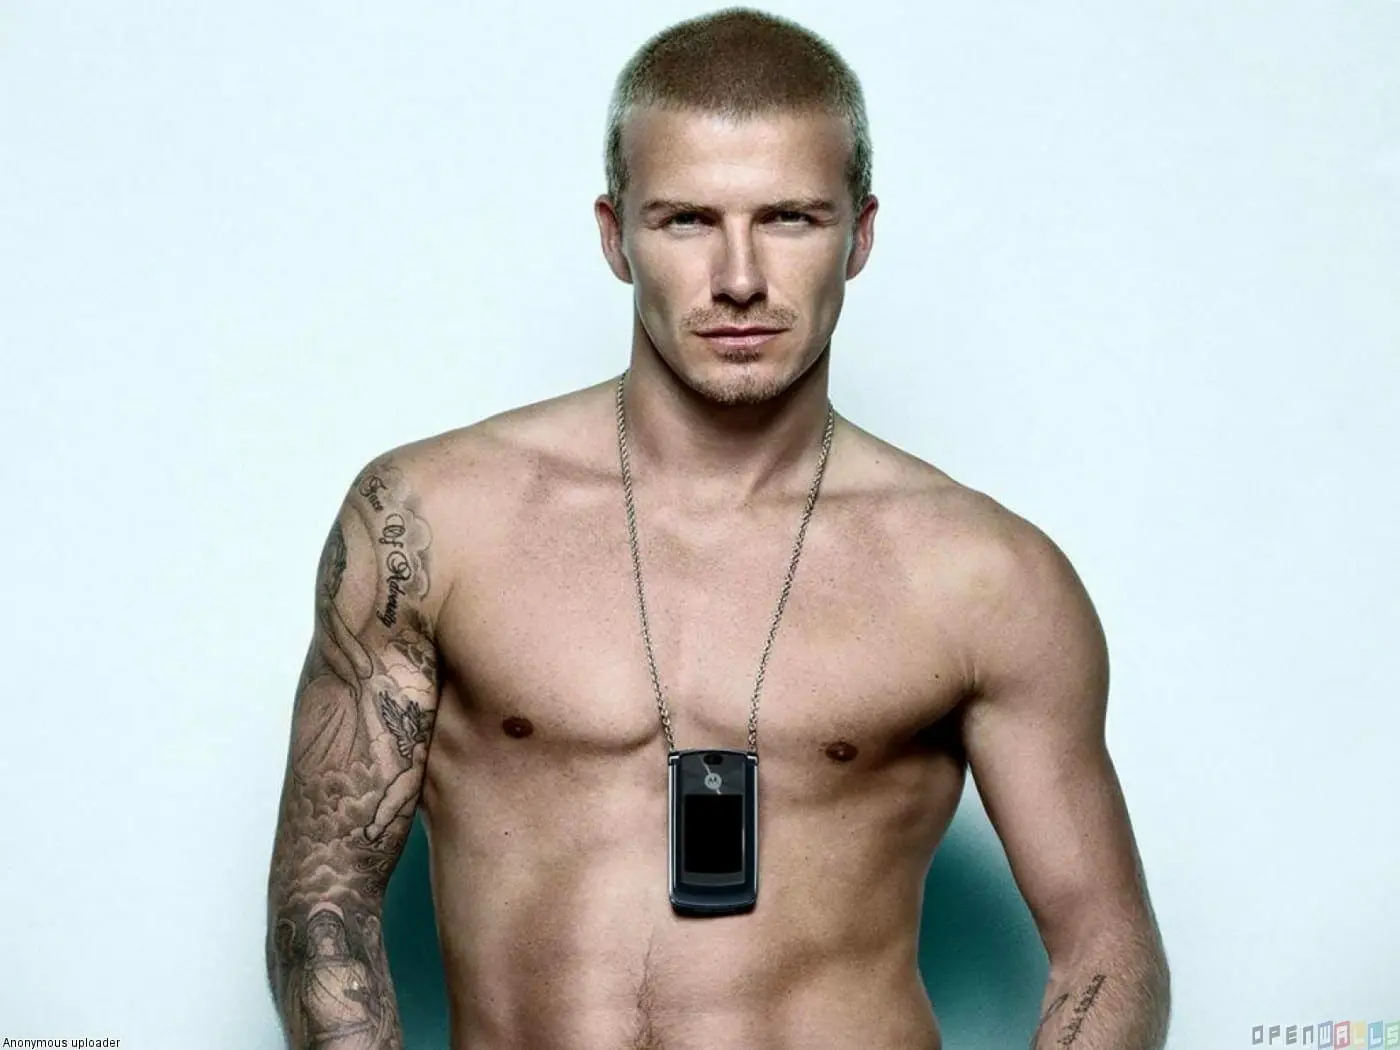 David Beckham sex tape